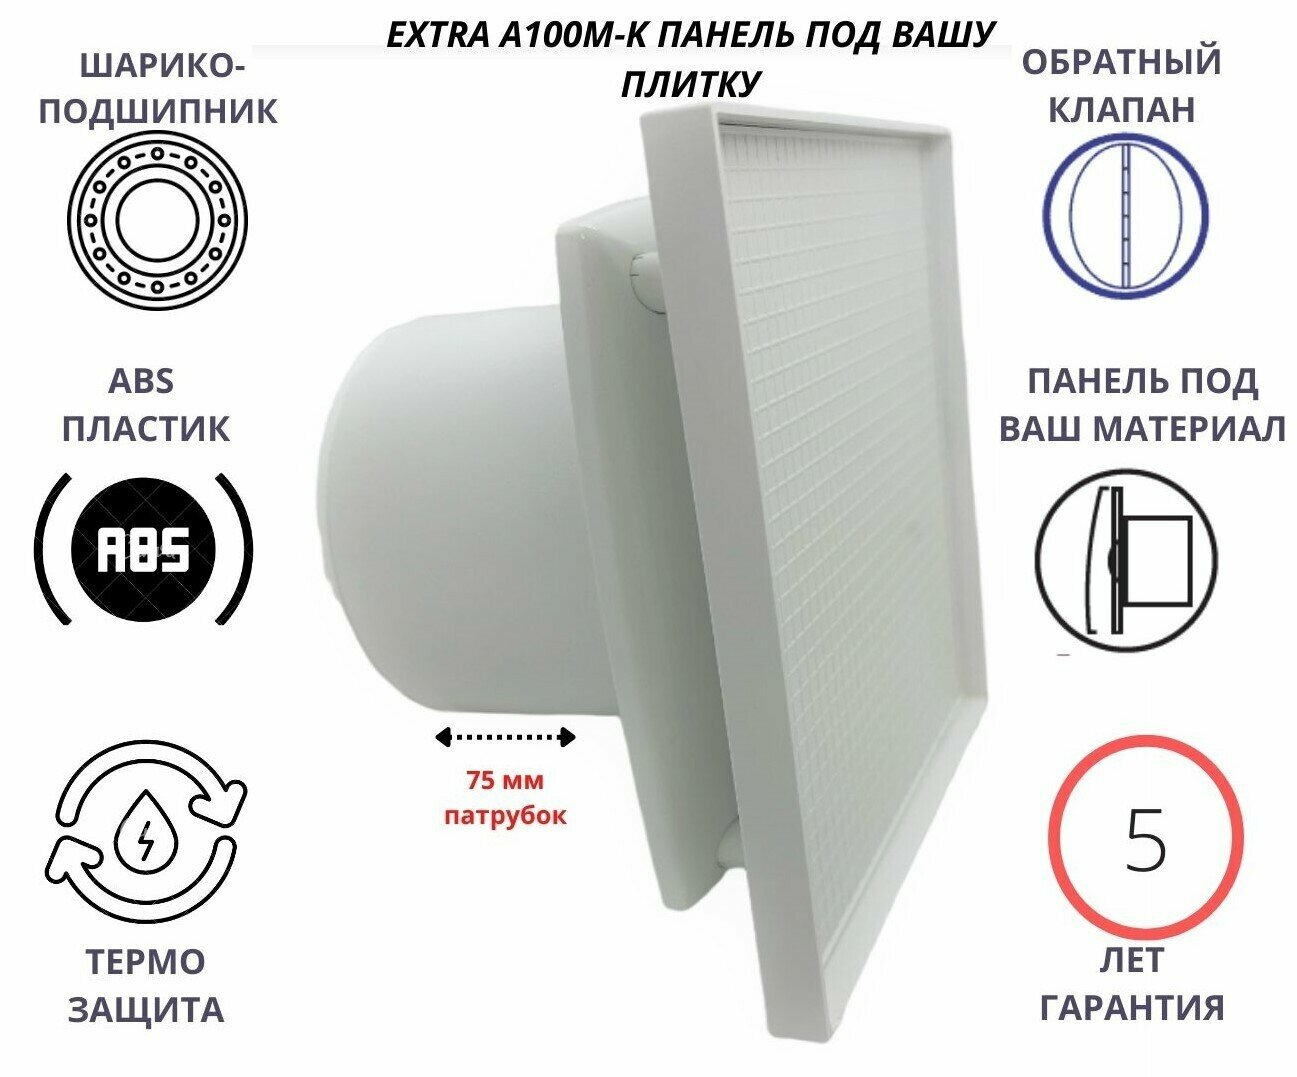 Вентилятор D100мм с панелью под вашу керамическую плитку и с обратным клапаном EXTRA A100М-PL Сербия